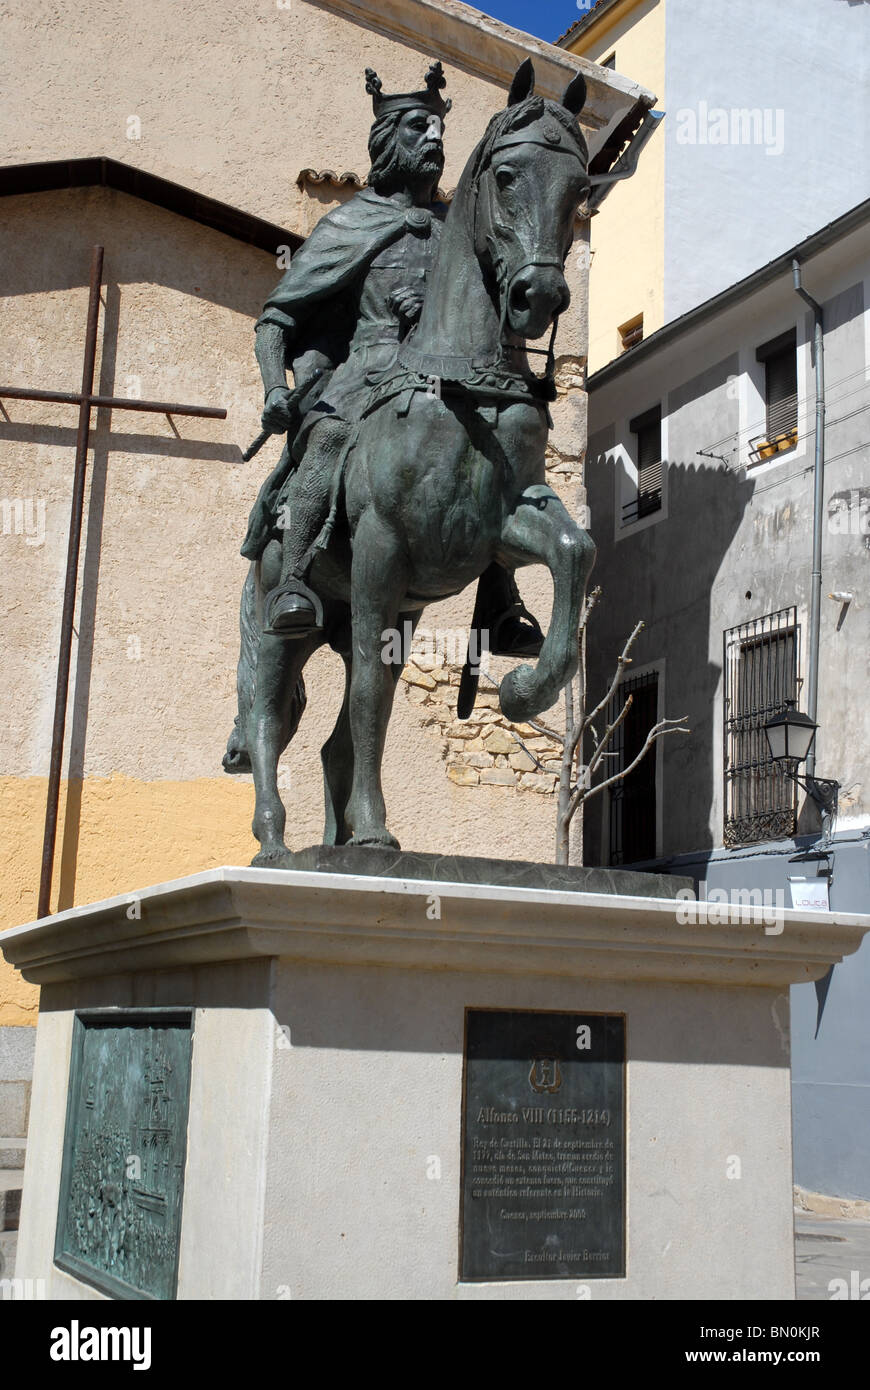 Statua equestre in bronzo di Alfonso VIII(1166-1214), Cuenca, Provincia Cuenca, Castilla la Mancha, in Spagna Foto Stock